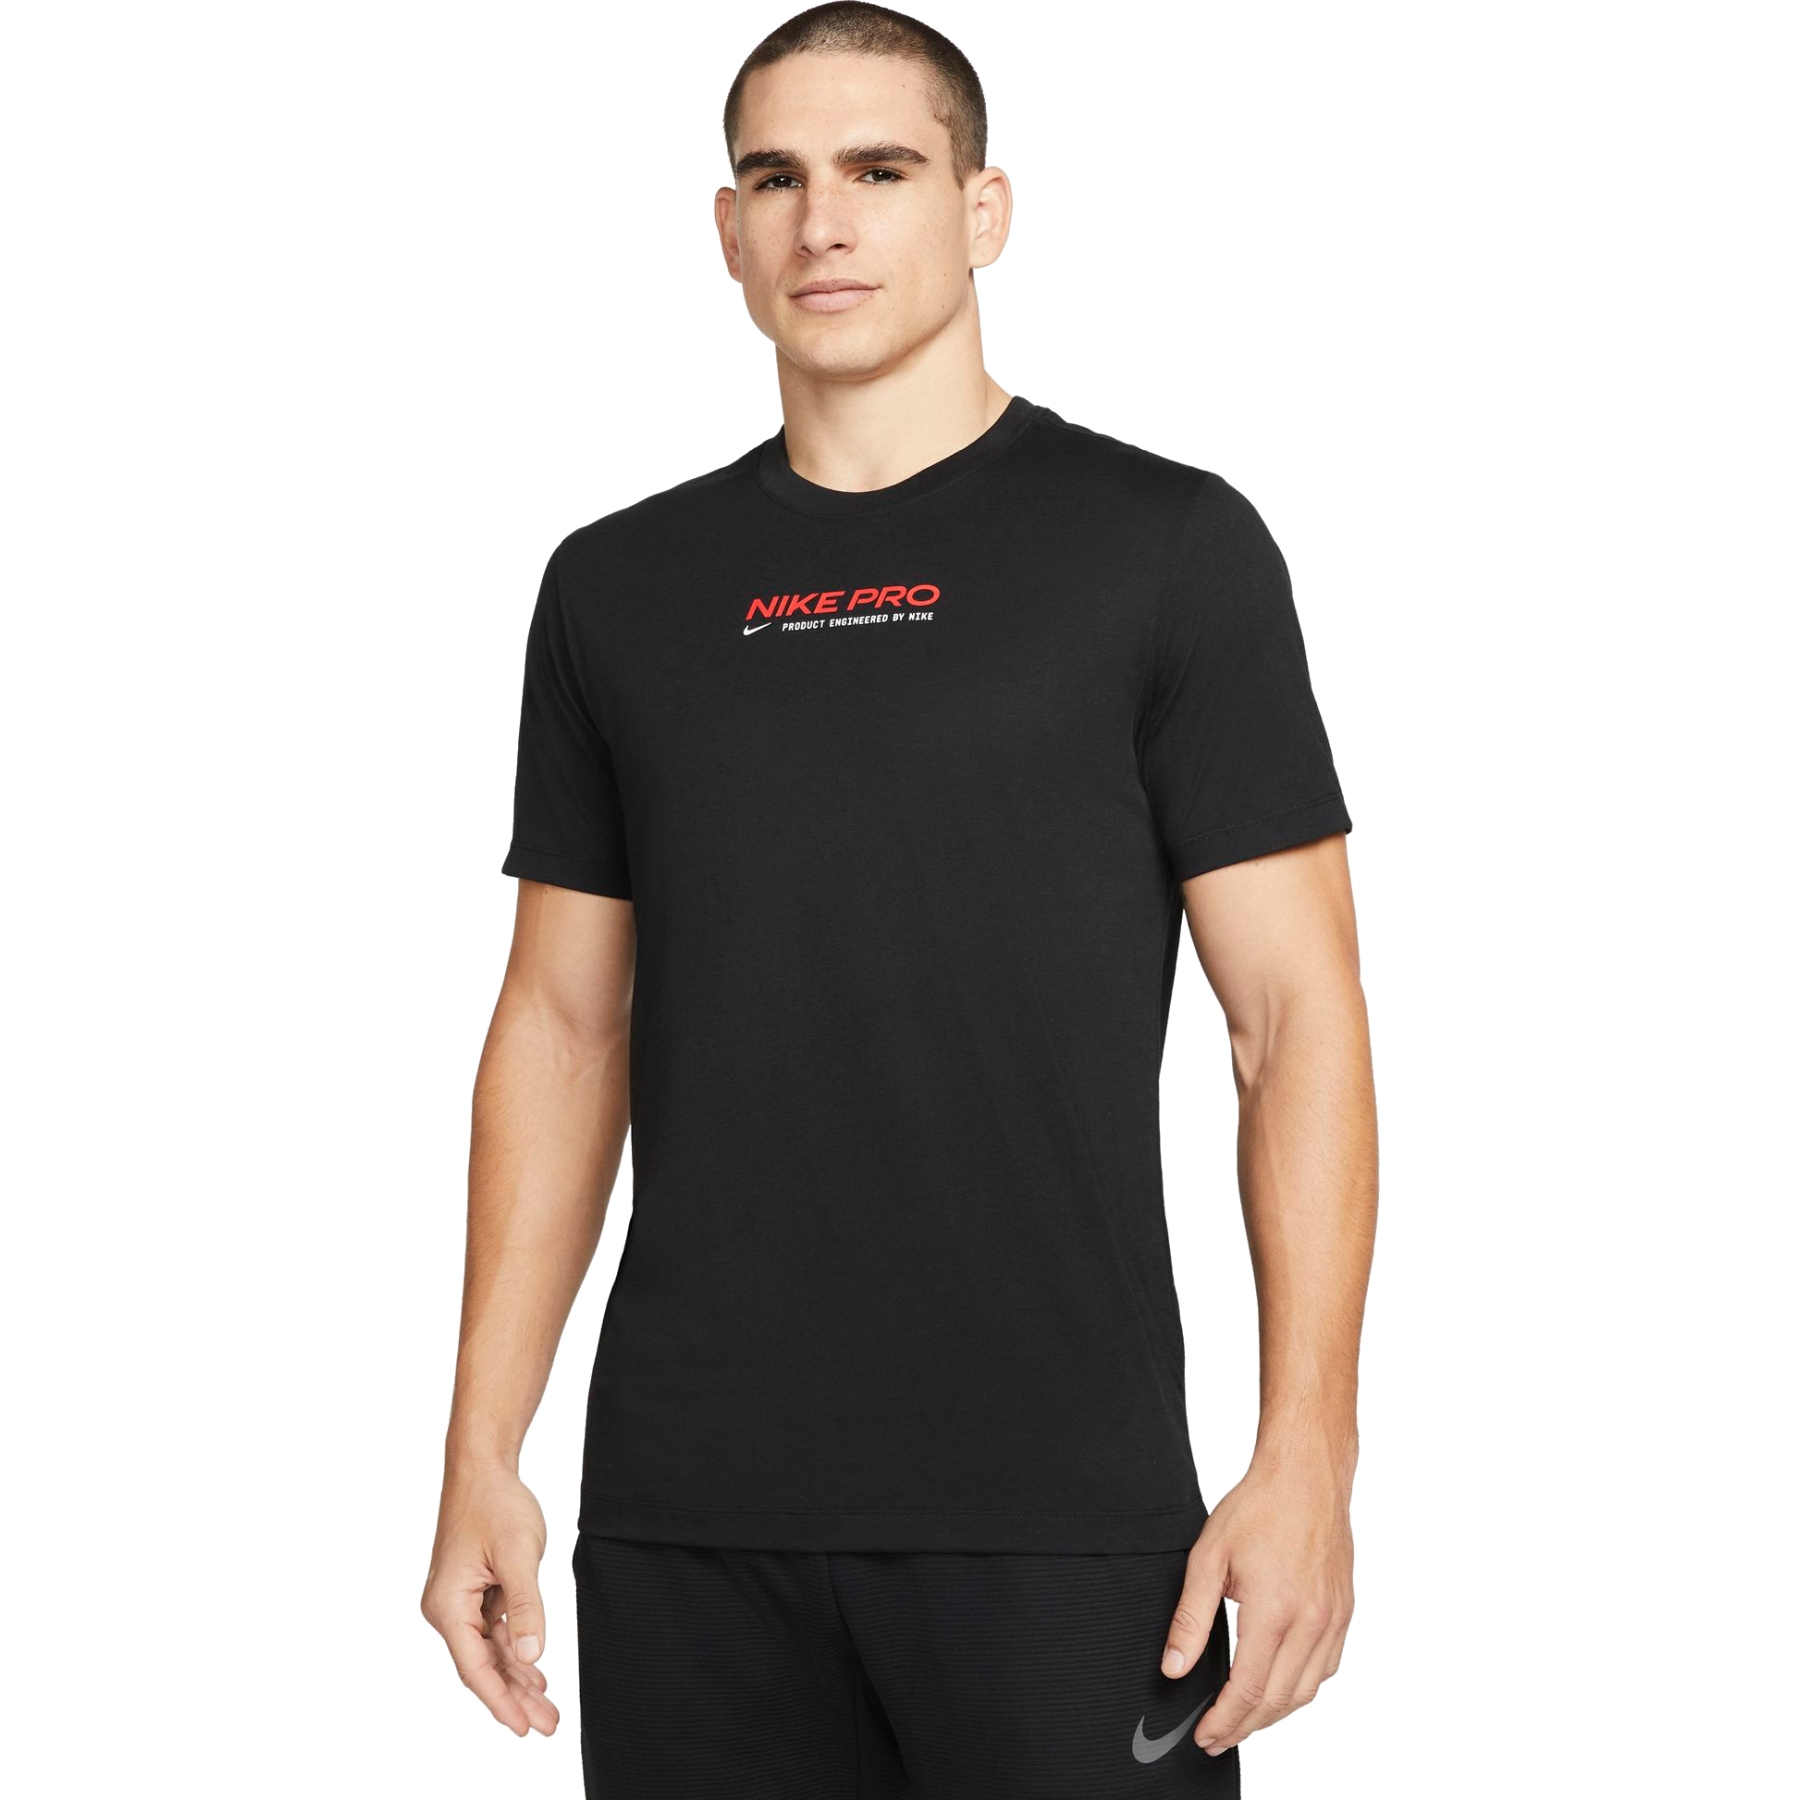 Produktbild von Nike Pro Dri-FIT Training Herren T-Shirt - schwarz DM5677-010